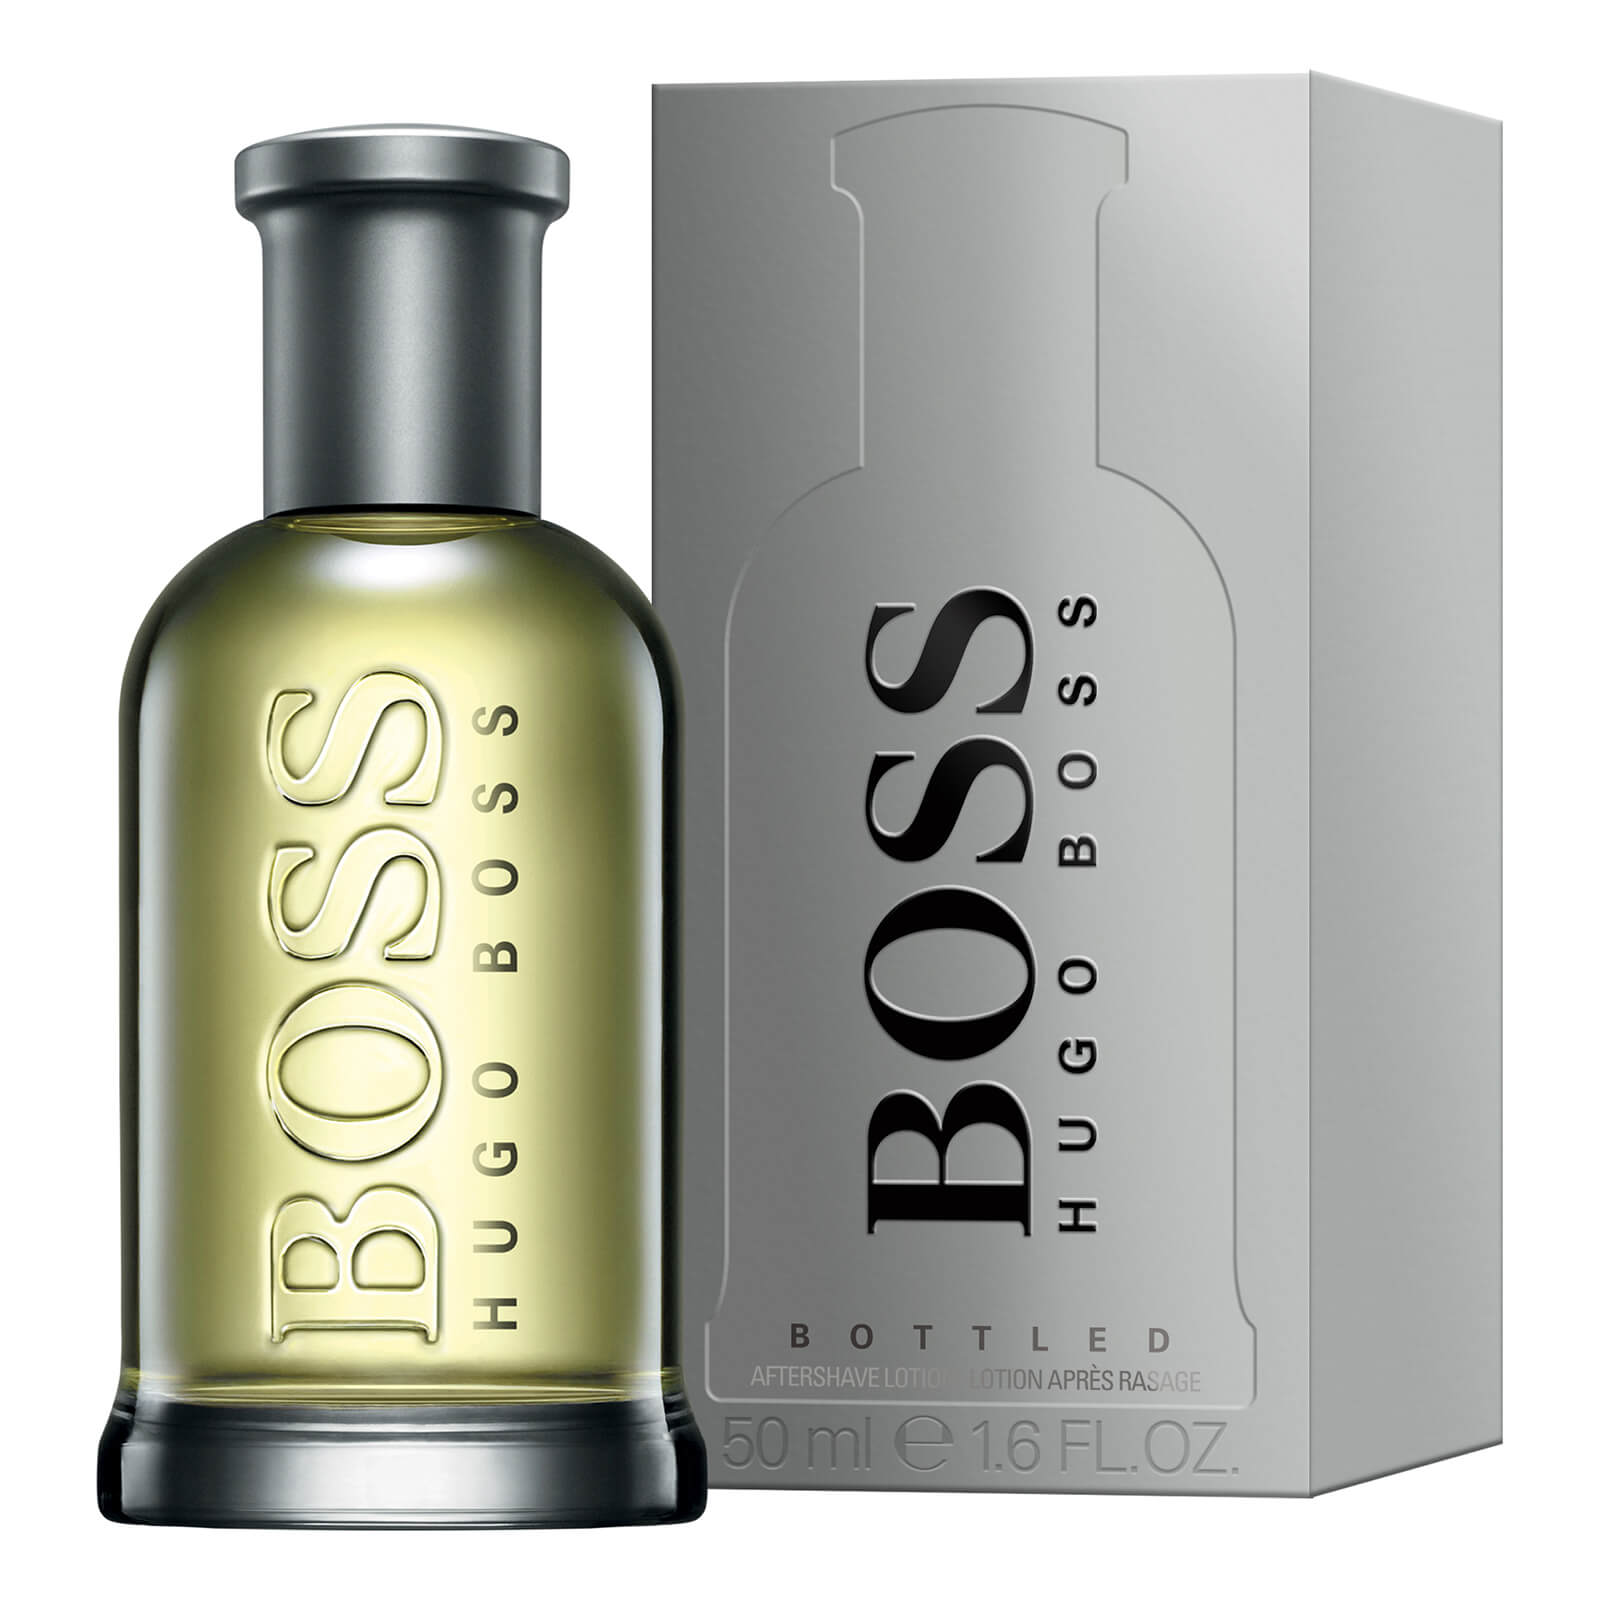  Hugo Boss Aftershave Boss Bottled De Hugo Boss 50 Ml 